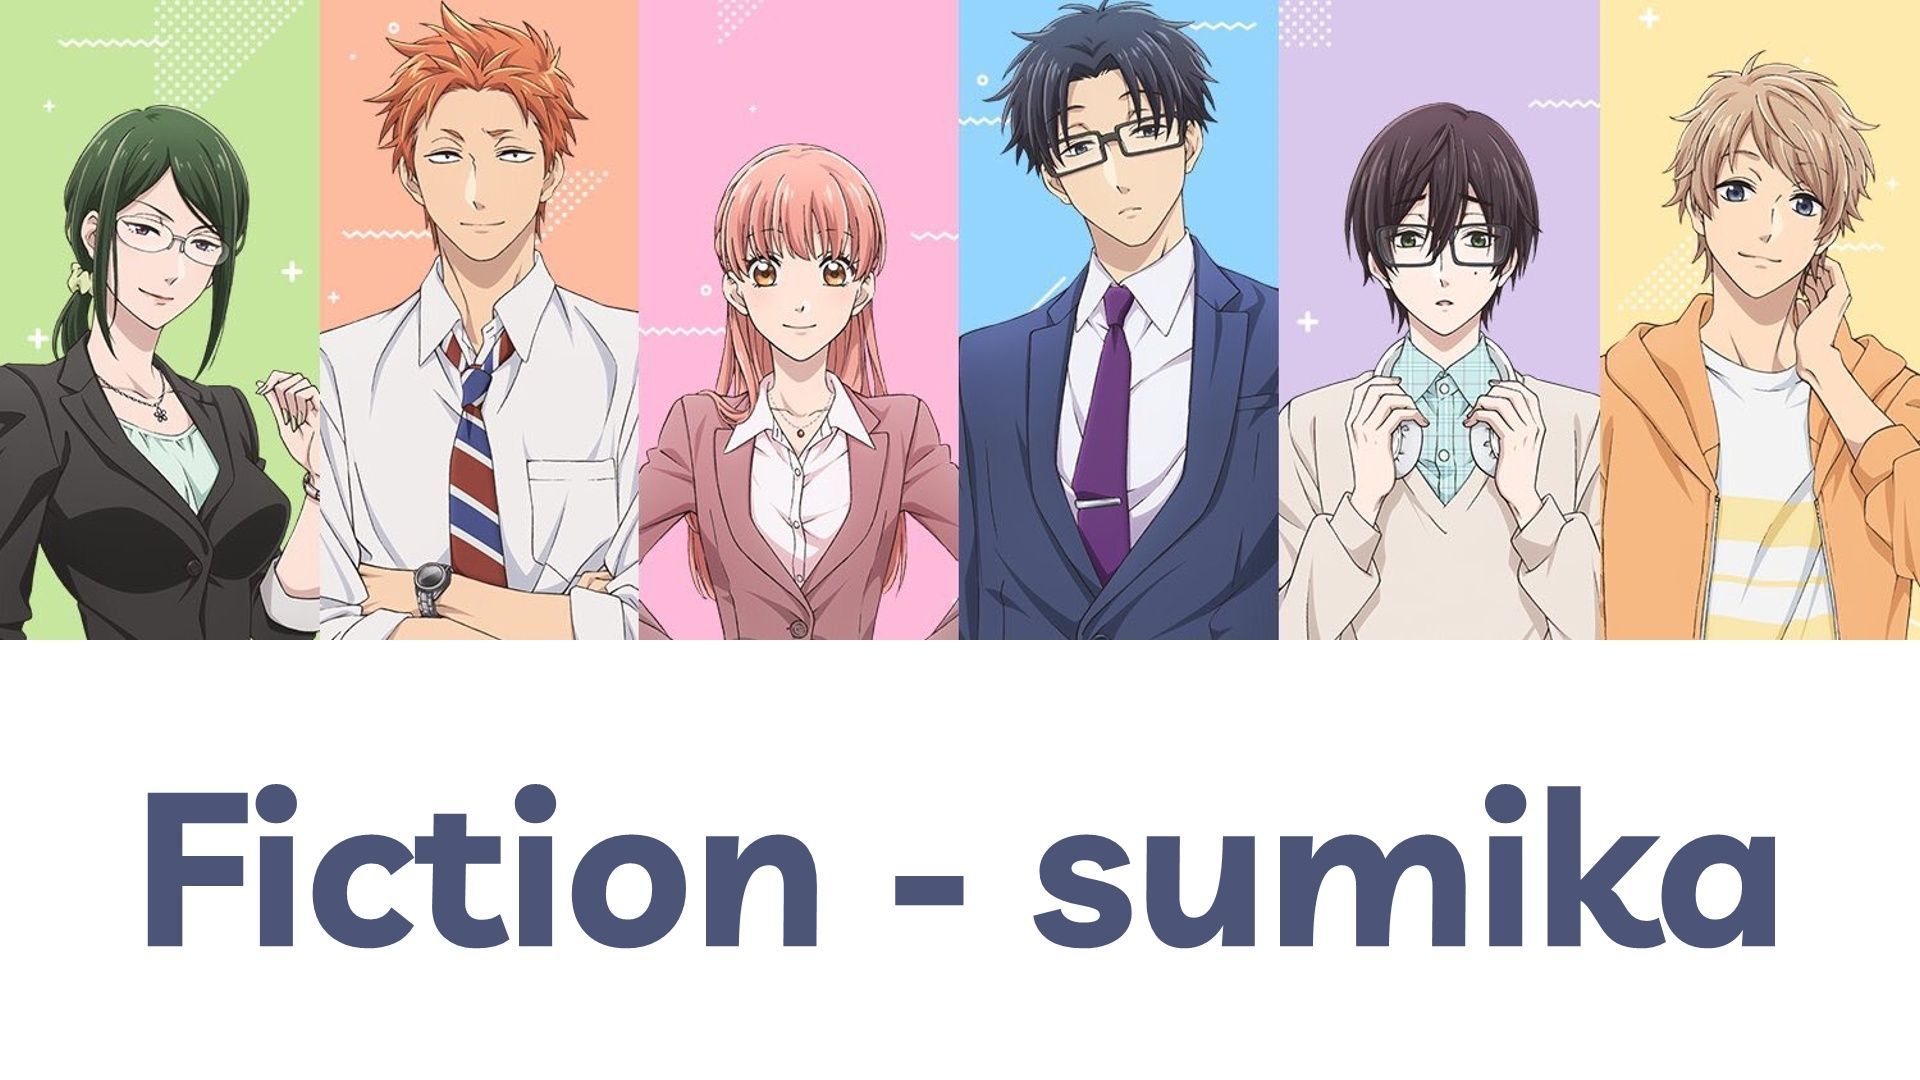 Sumika — Fiction (Wotaku ni Koi wa Muzukashii OP) — Anime Liryca